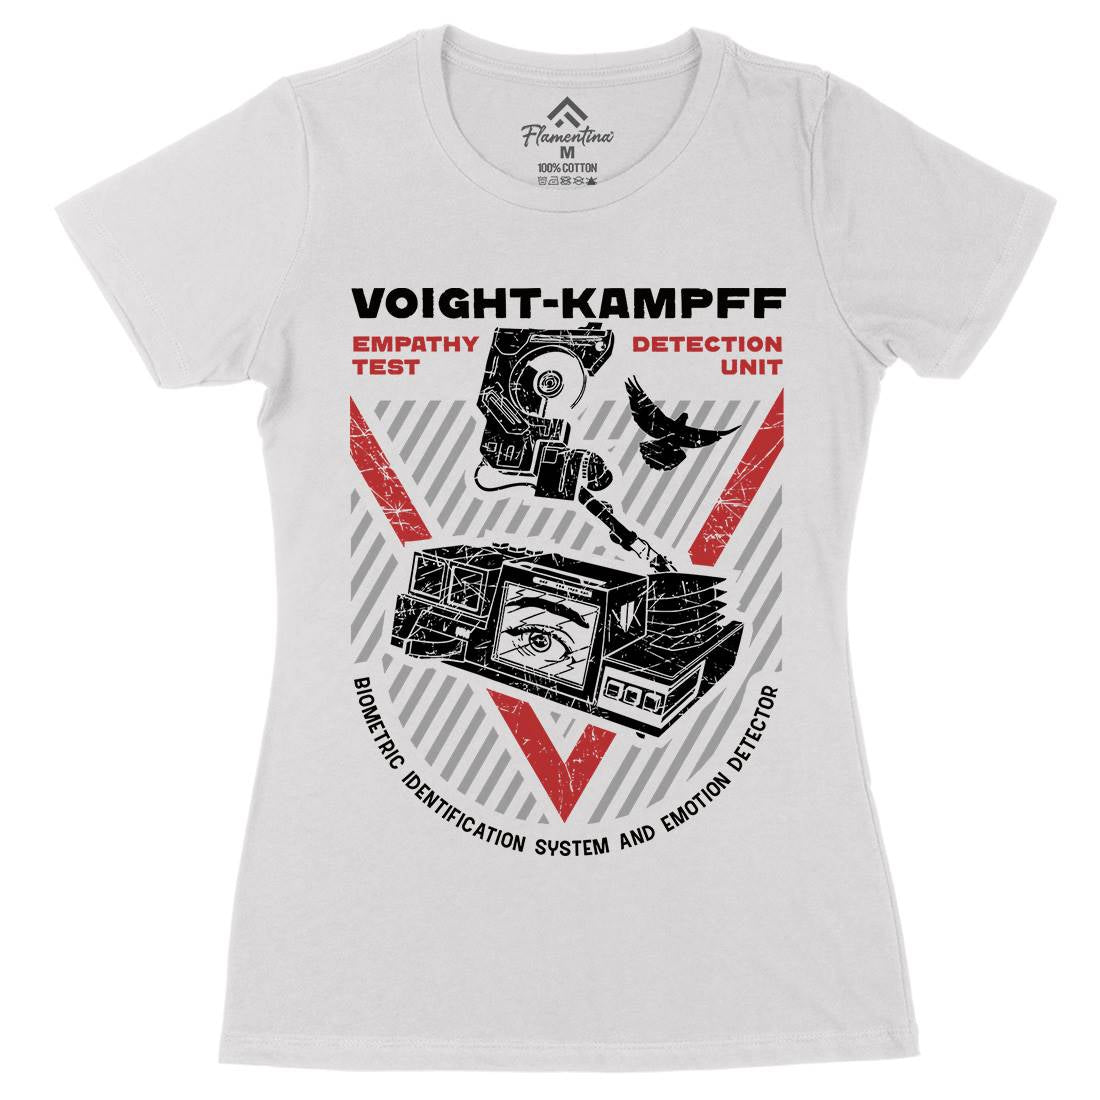 Voight Kampff Womens Organic Crew Neck T-Shirt Space D175